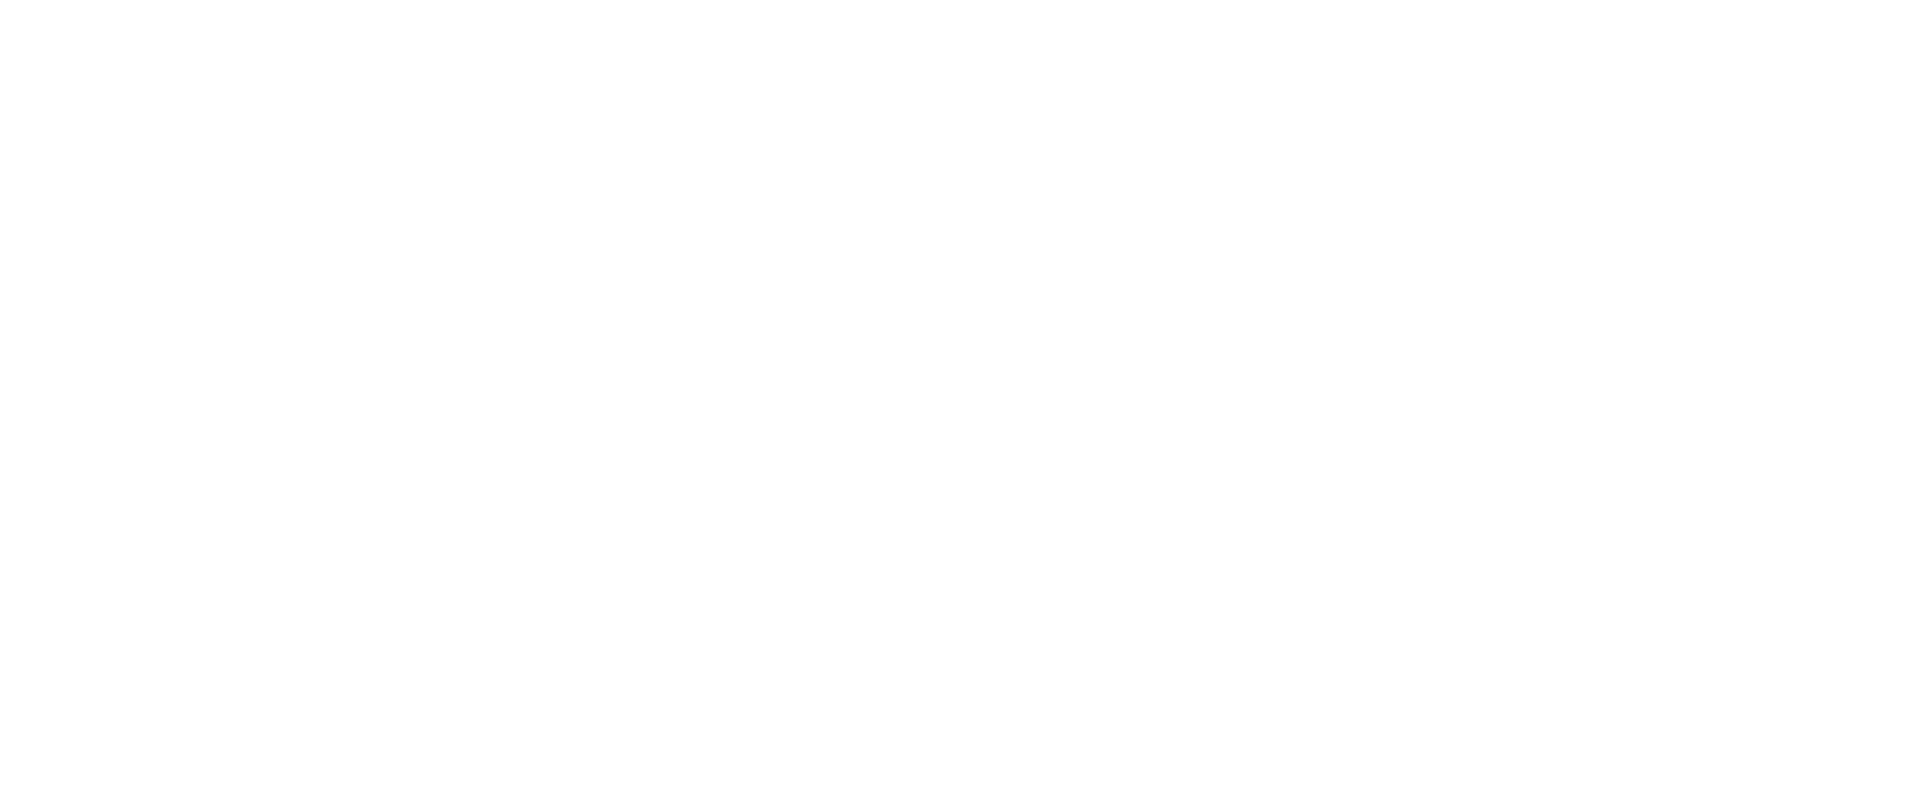 Lifespark-Logo-White